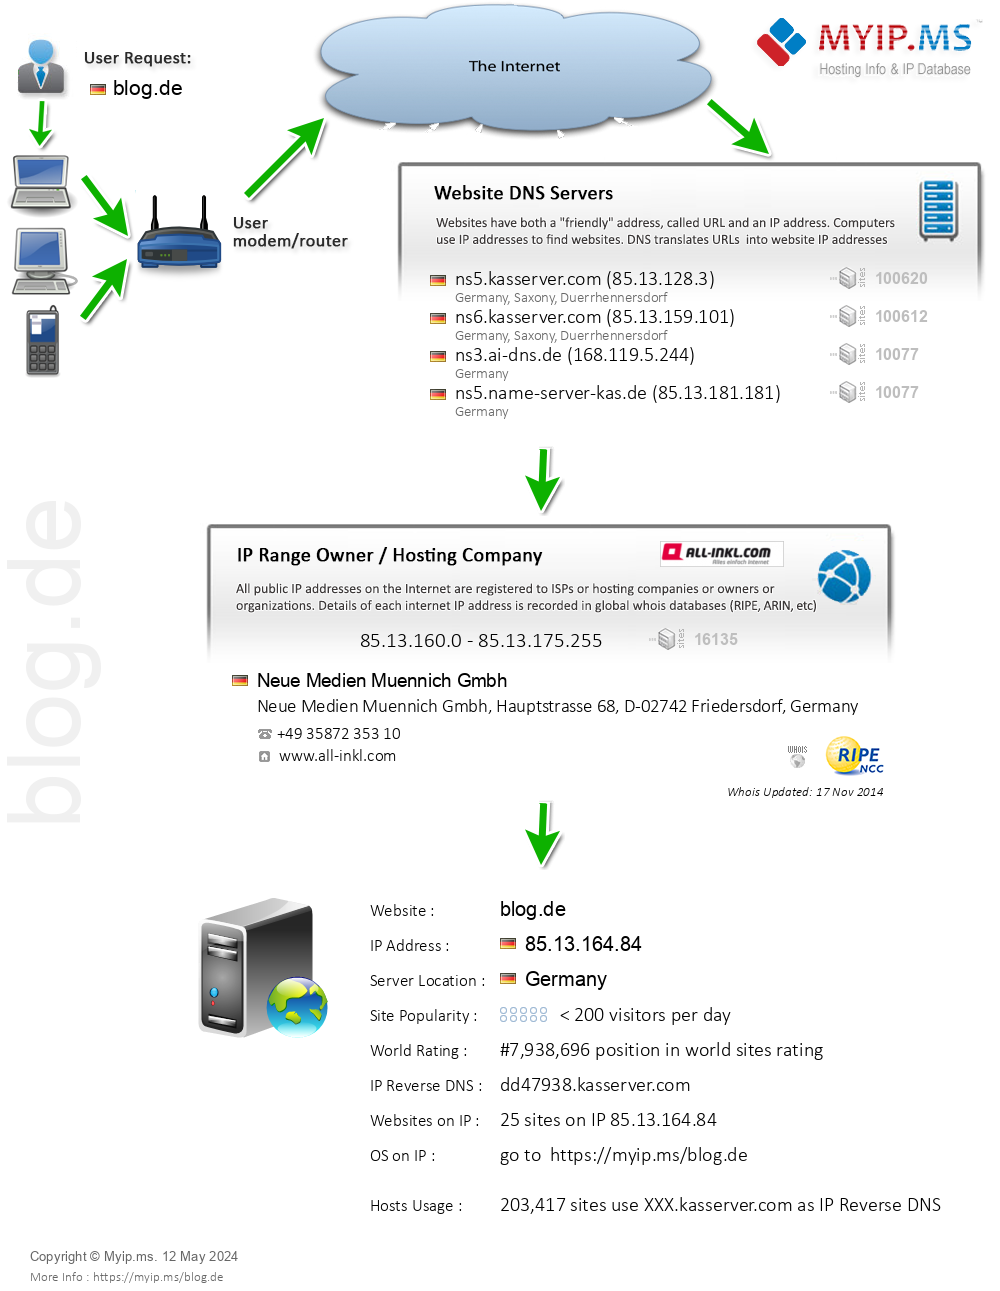 Blog.de - Website Hosting Visual IP Diagram